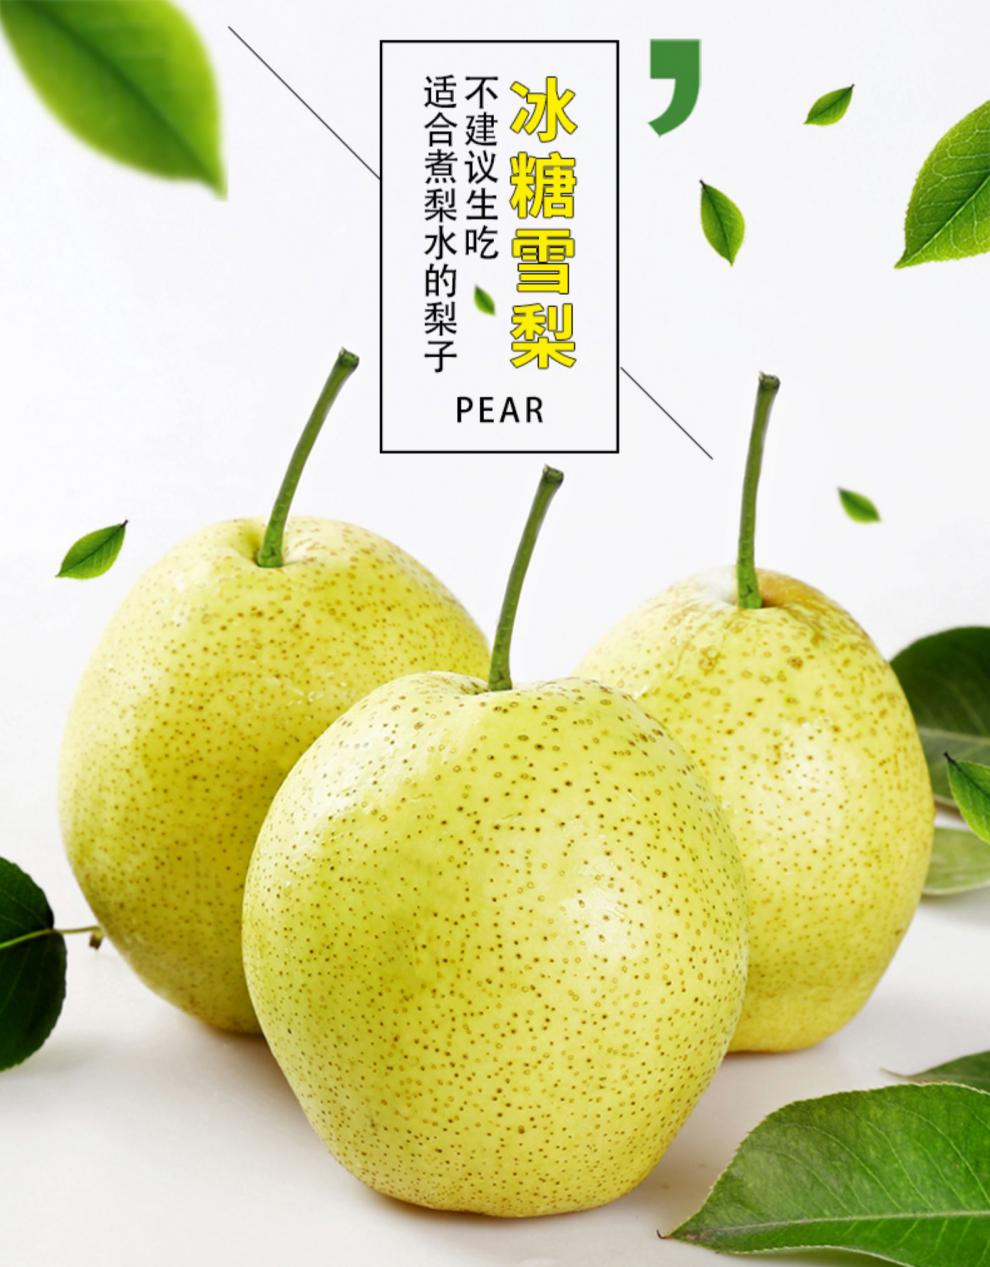 日本pear雪梨图片